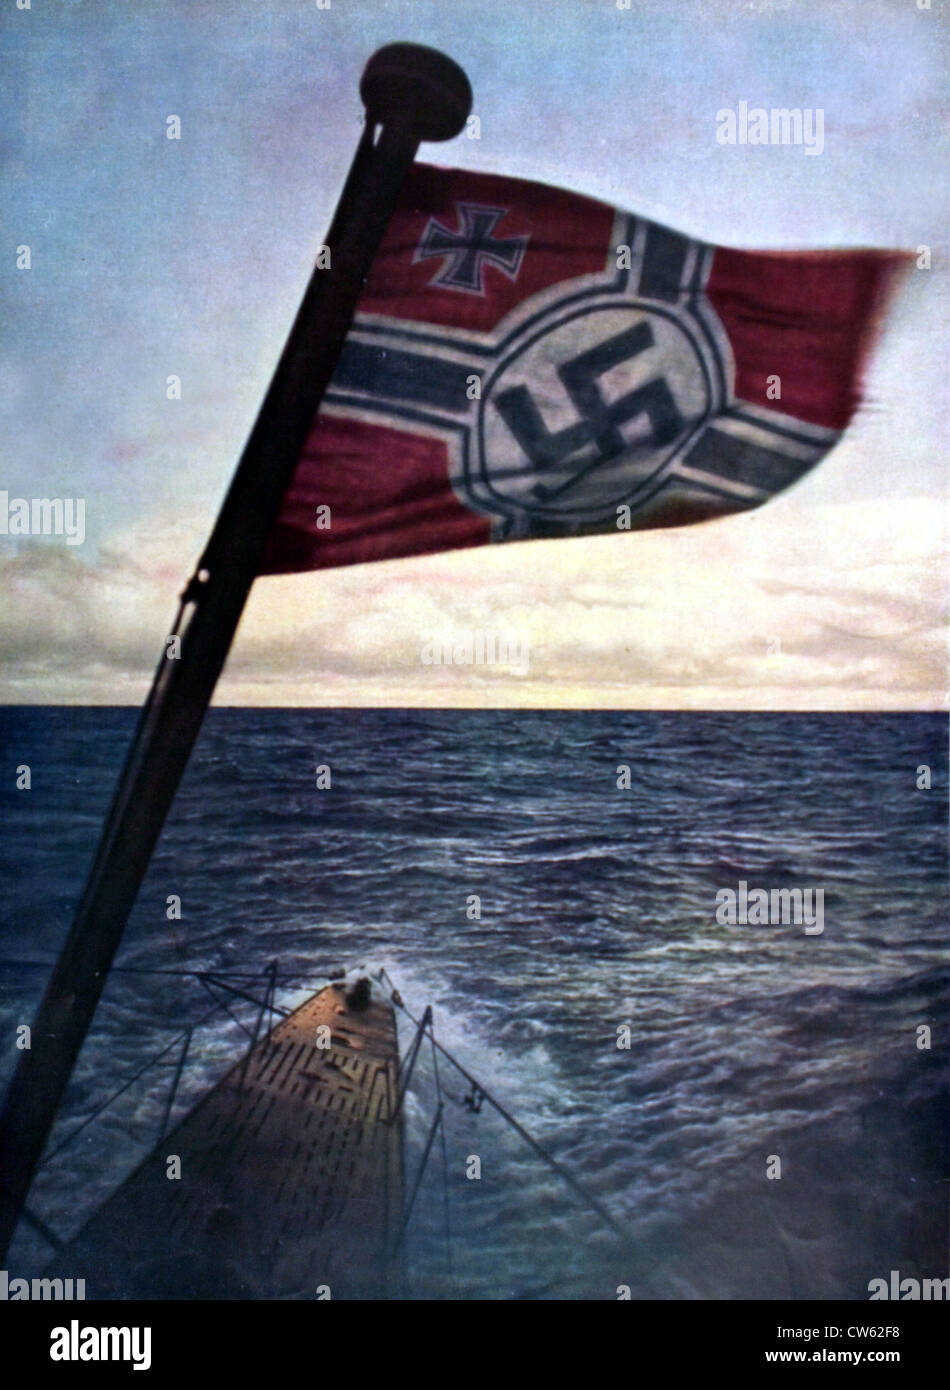 La Seconde Guerre mondiale. Un sous-marin allemand dans l'océan Atlantique, dans la région de 'Signal' fevrier 1941. Banque D'Images